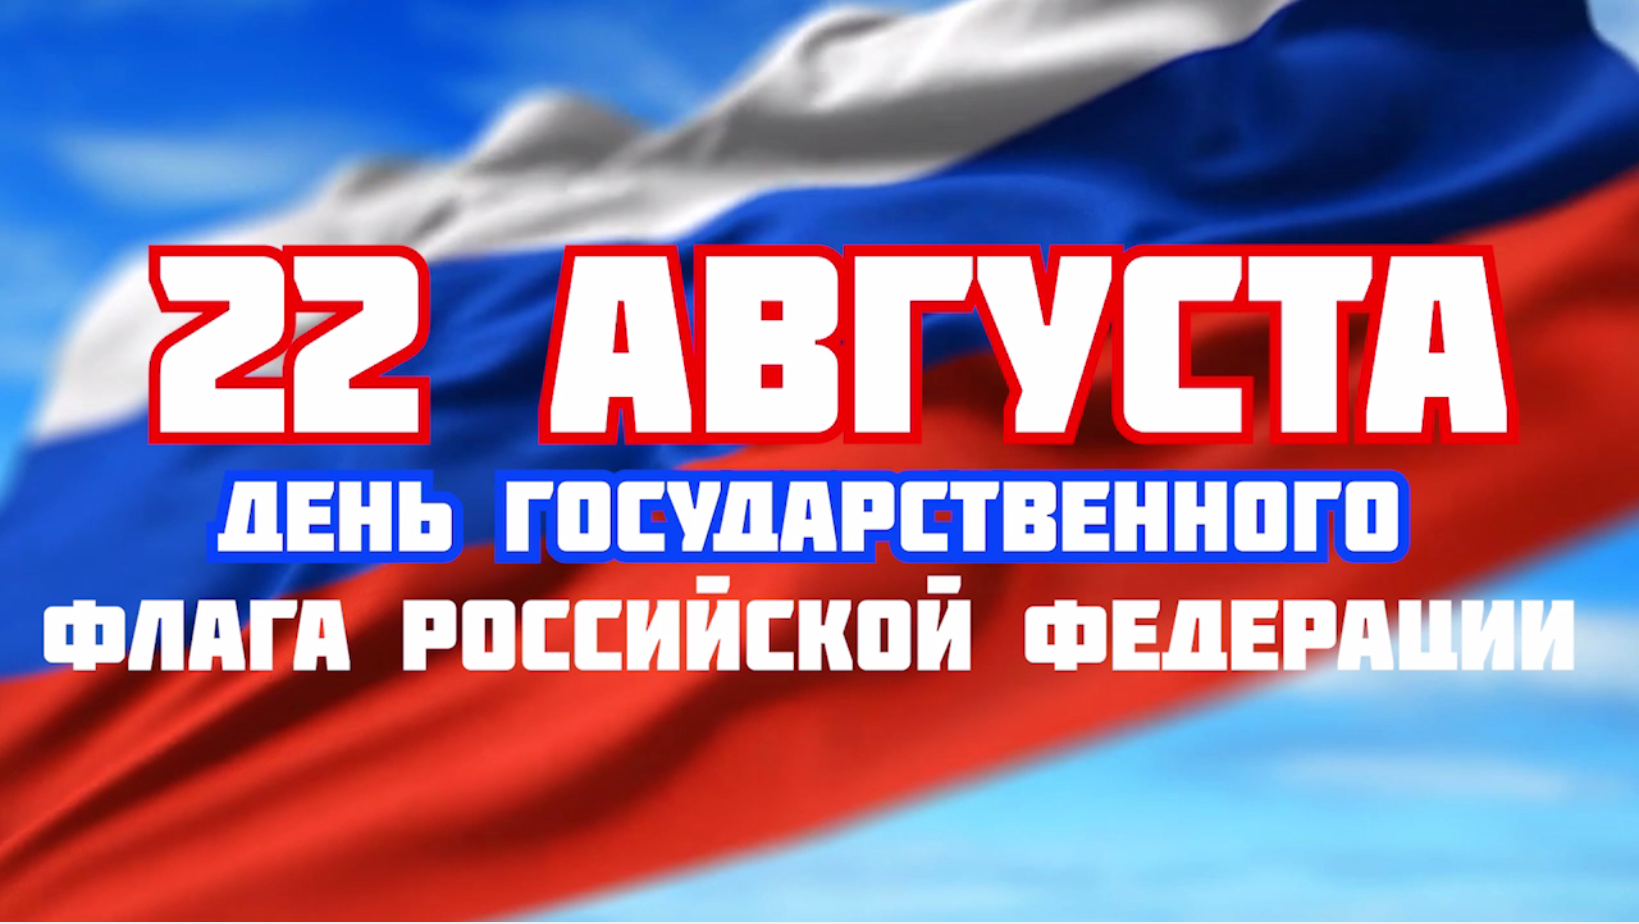 22 мая рф. День флага. 22 Августа день государственного флага Российской Федерации. День российского флага в 2022. Открытка с праздником день флага.